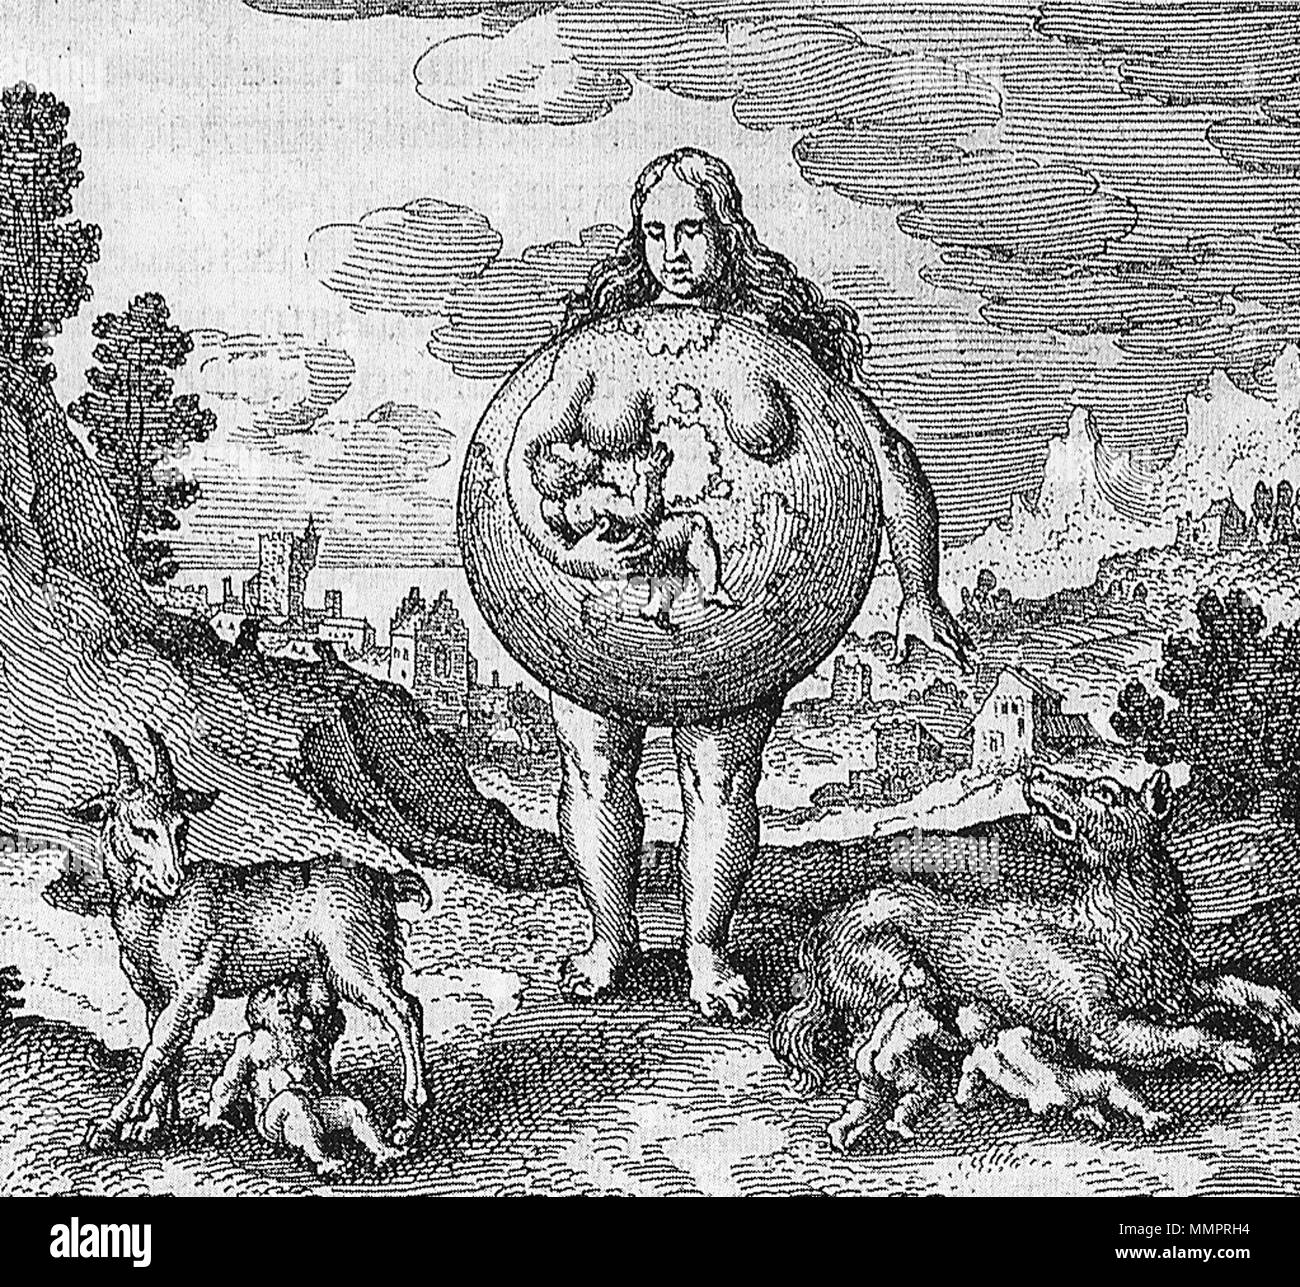 . Englisch: Emblem 2d: "Nutrix ejus Terra est." von Michael Maier, Atalanta Fugiens, 1617/1618 English: Emblem 2d: "Nutrix ejus Terra est." (eine Säugamme ist die Erde" - Buchillustration in: Michael Maier: Atalanta Fugiens, 1617/1618 Français: "Nutrix ejus Terra est." L'infirmière est la terre, Michael Maier, Atalanta Fugiens, 1617/1618. 1618 oder früher. User: Mattes Atalanta Fugiens-Emblem 2d Stockfoto